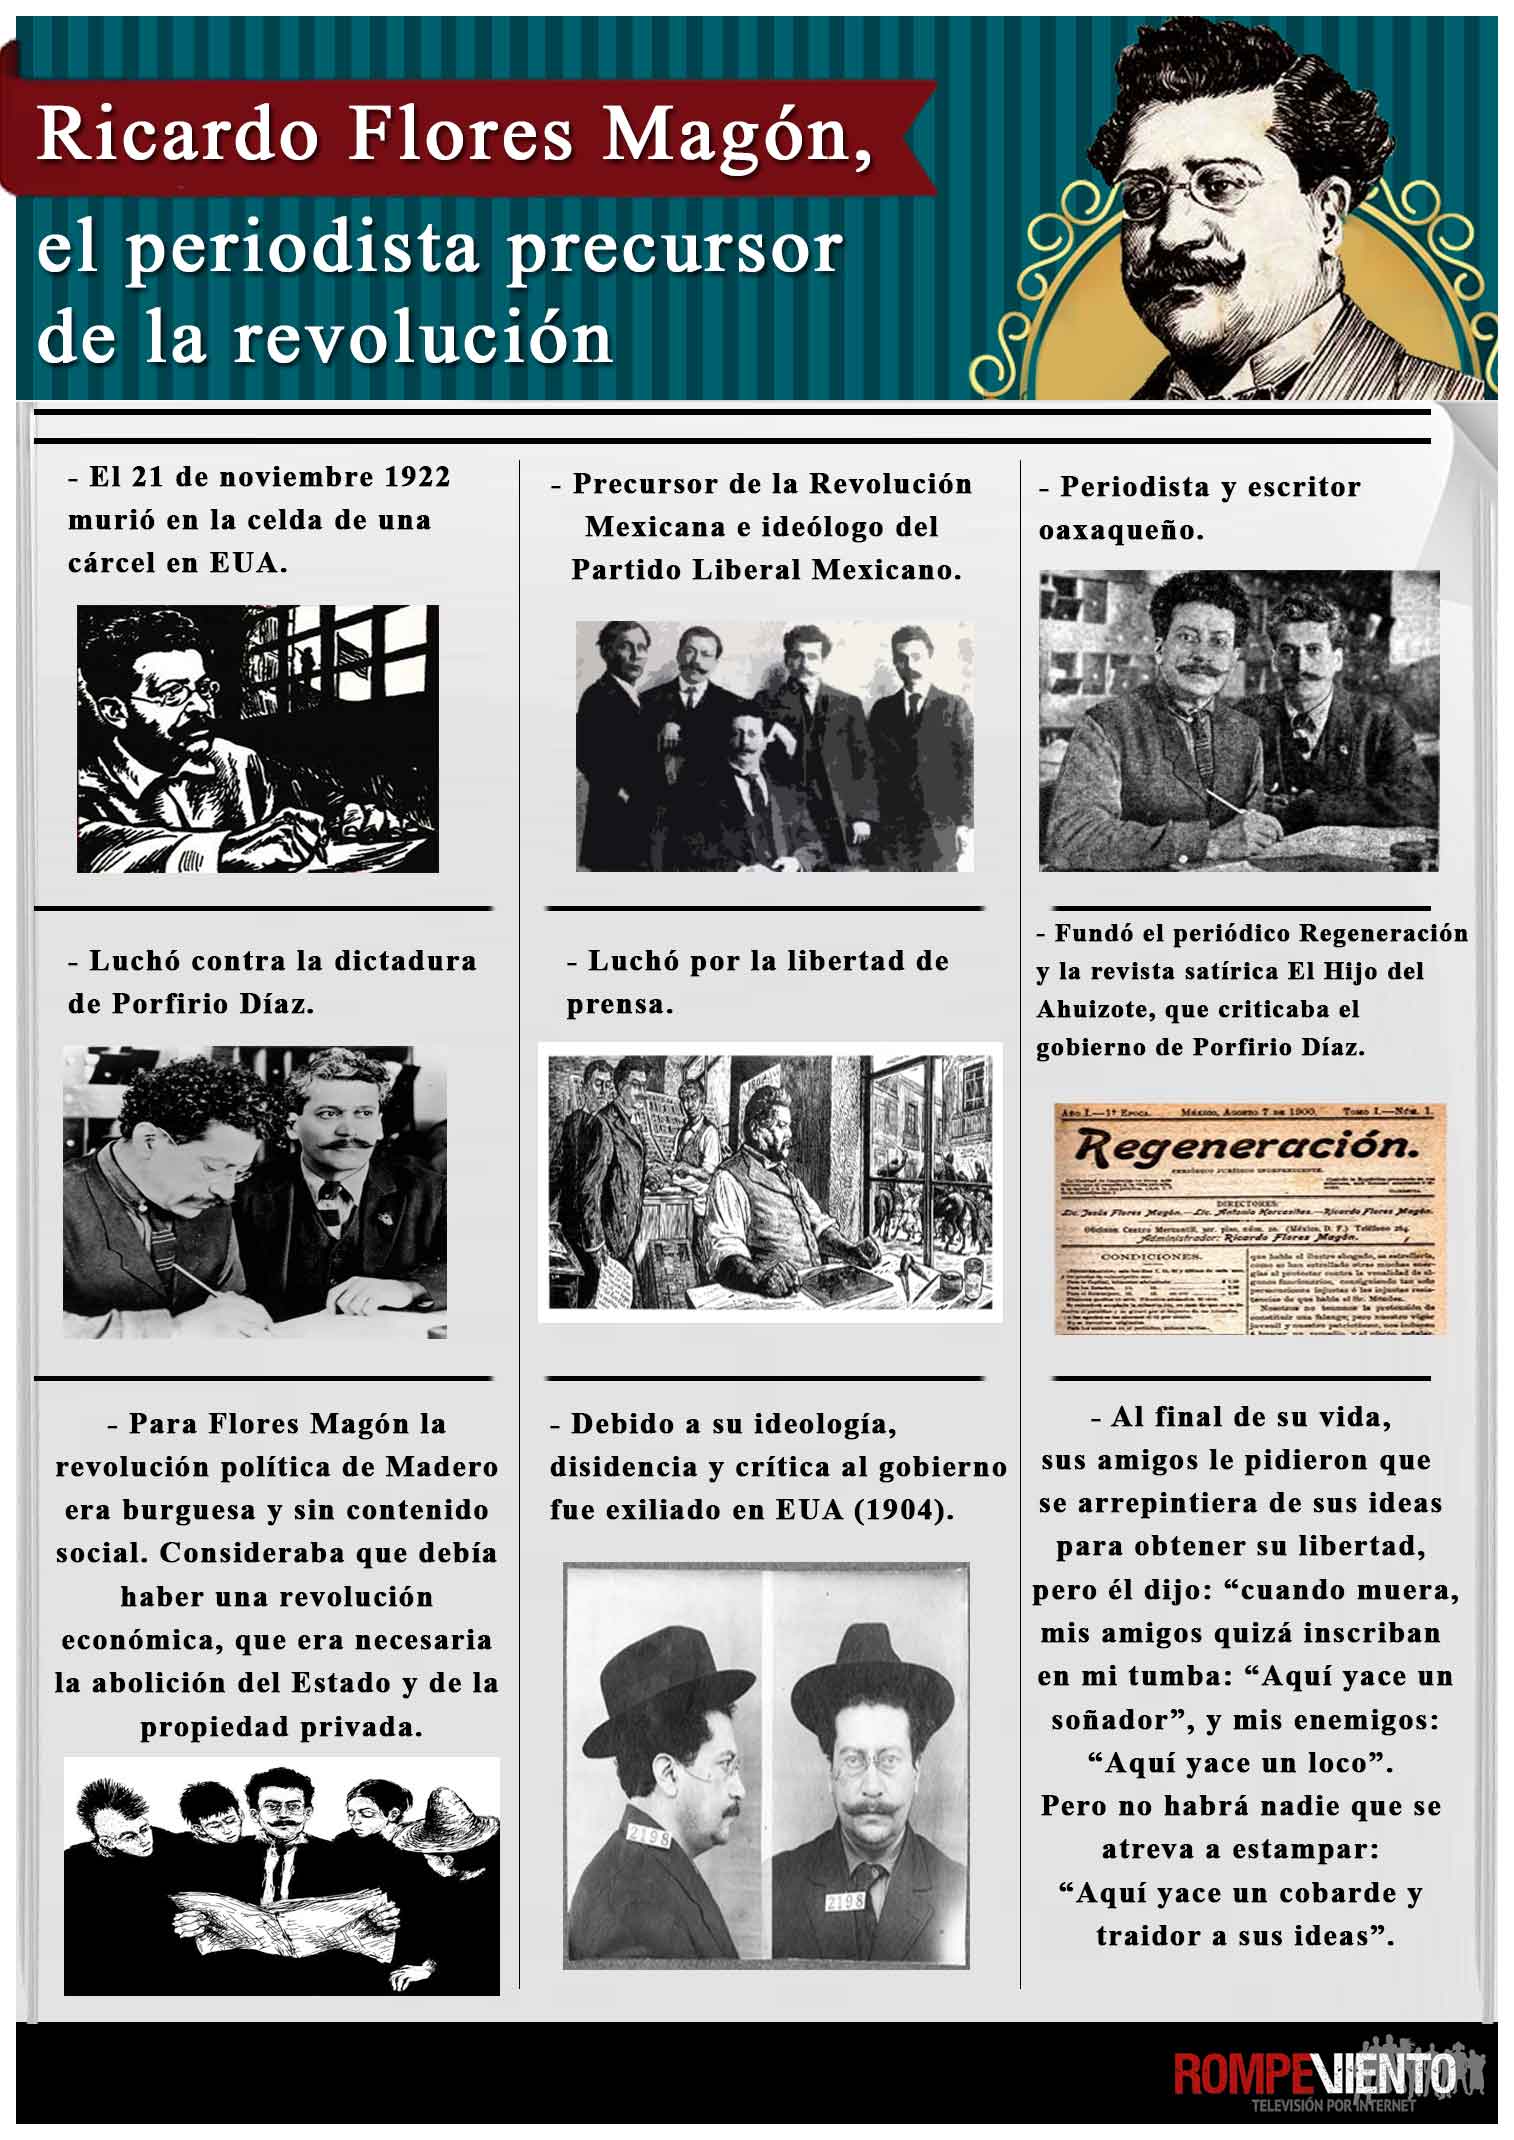 Ricardo Flores Magón, el periodista precursor de la revolución